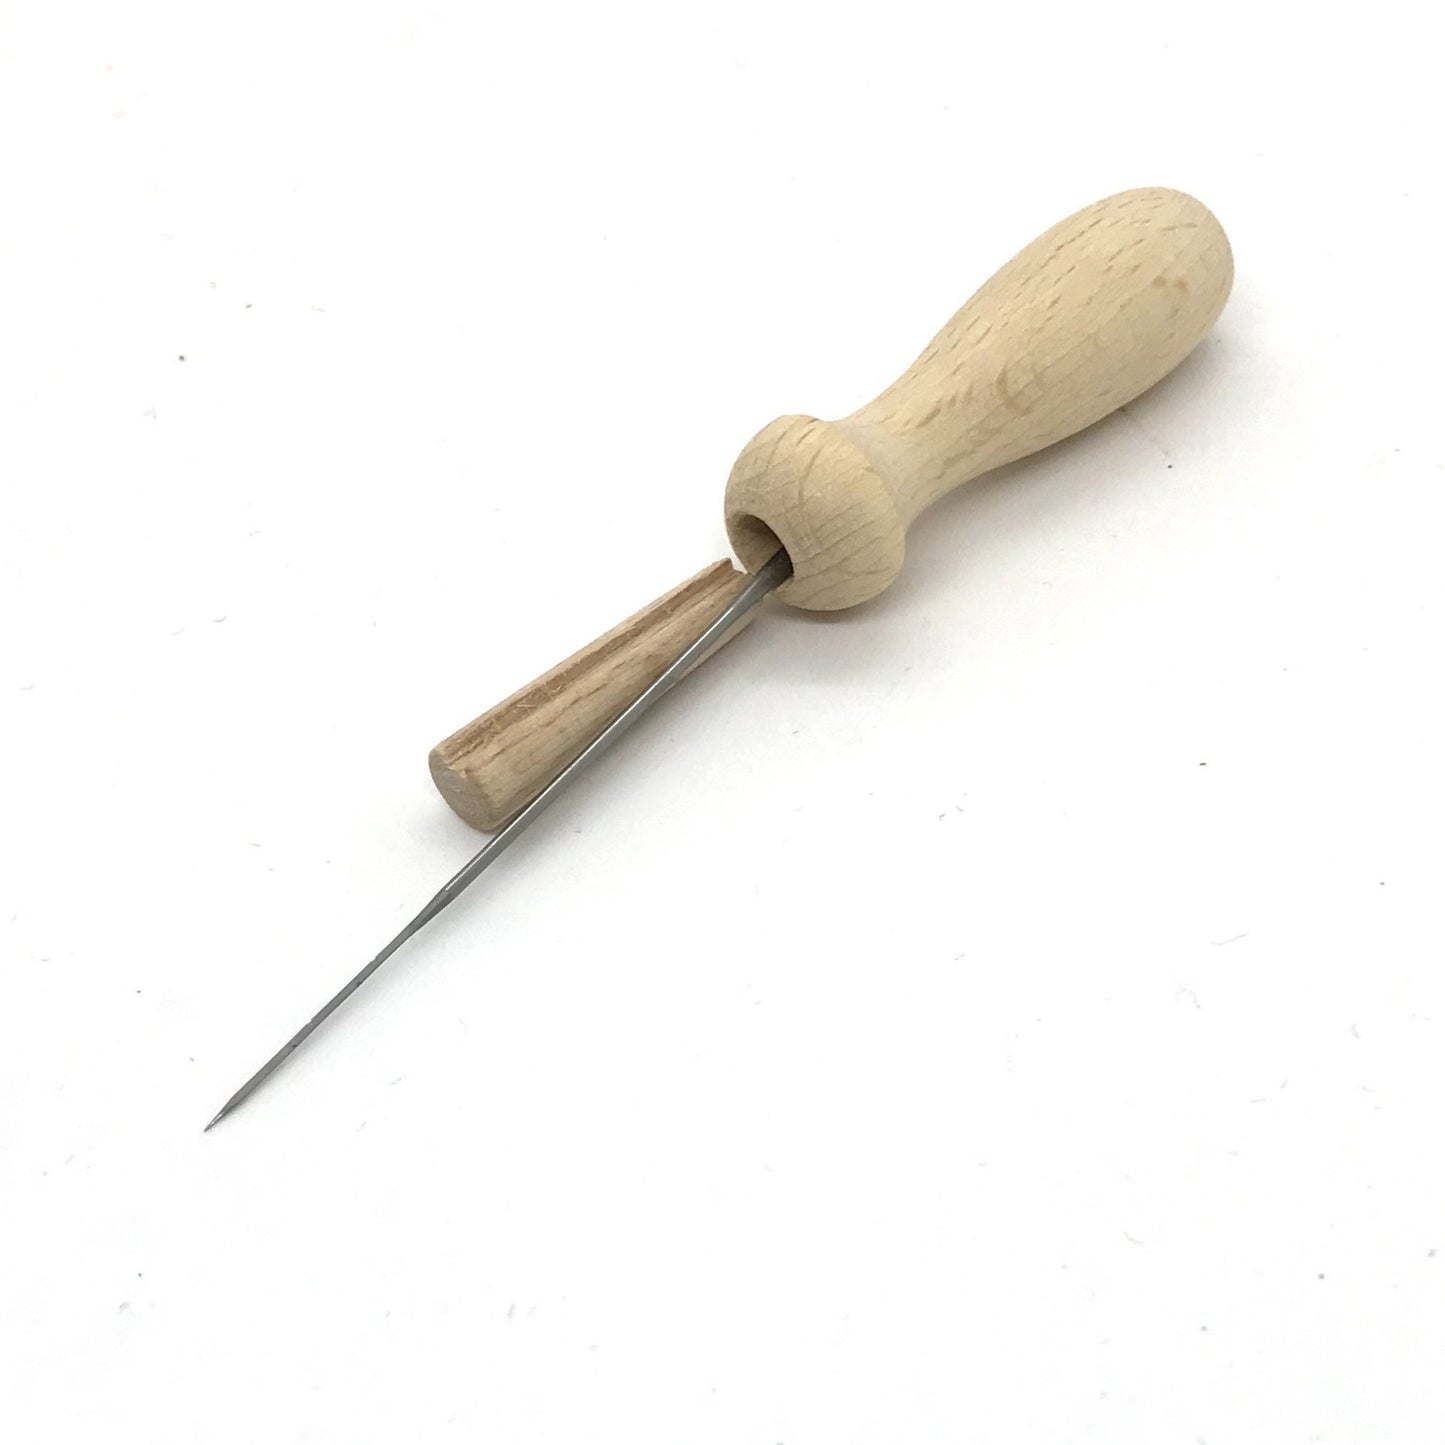 Wooden Felting Needle Holder - at Wabi Sabi